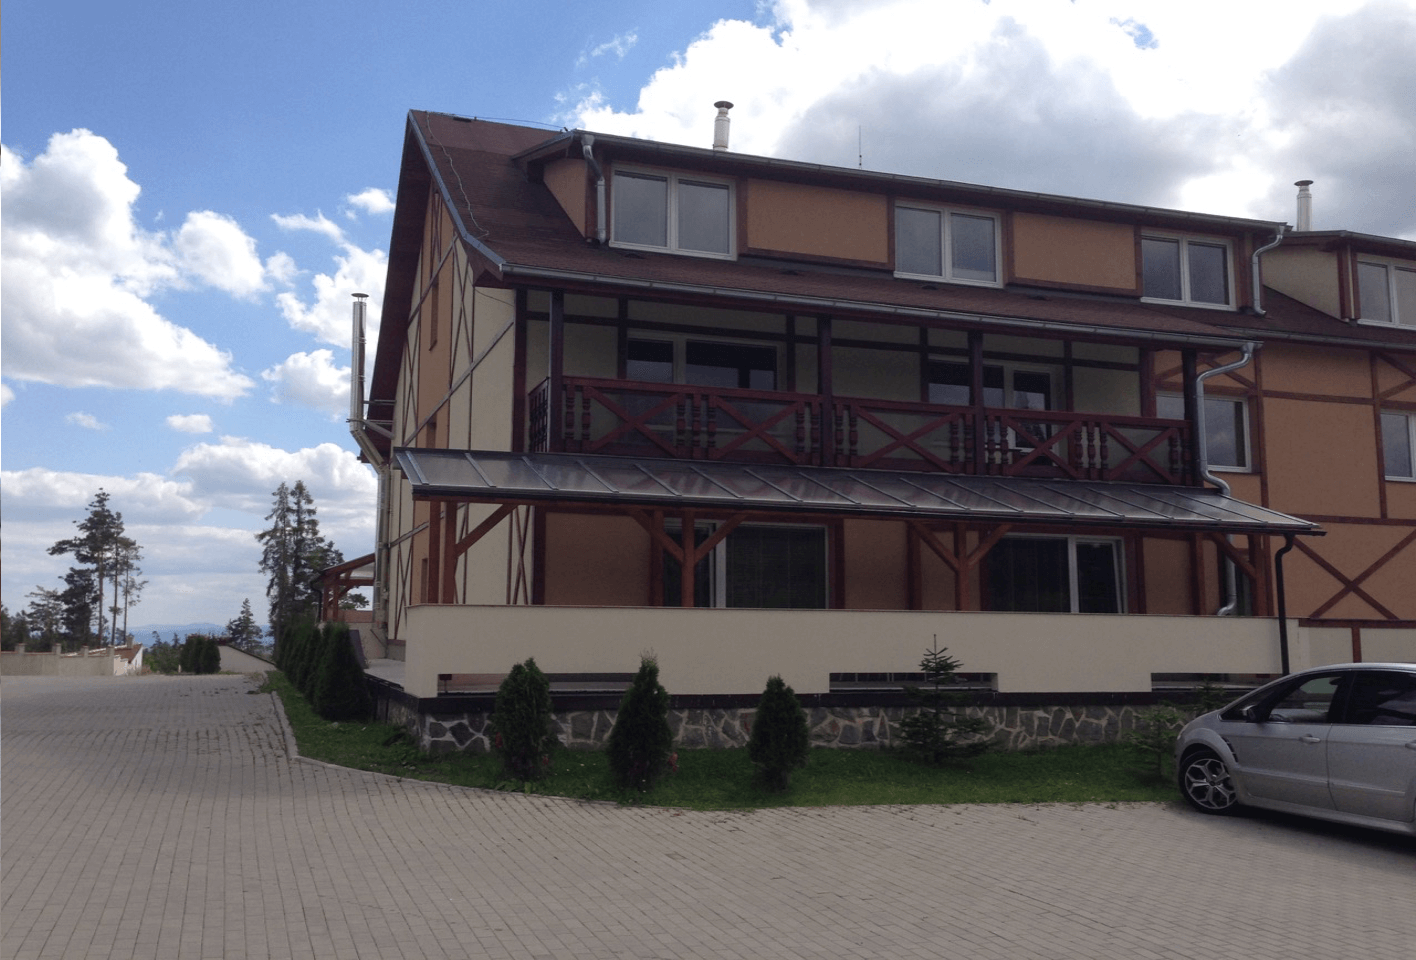 Predaný: Na predaj 4 izbový byt, Veľký Slavkov okres Poprad (2km od Starý Smokovec, Tatry) úžitková 141,78m2, terasa 35,9m2-3